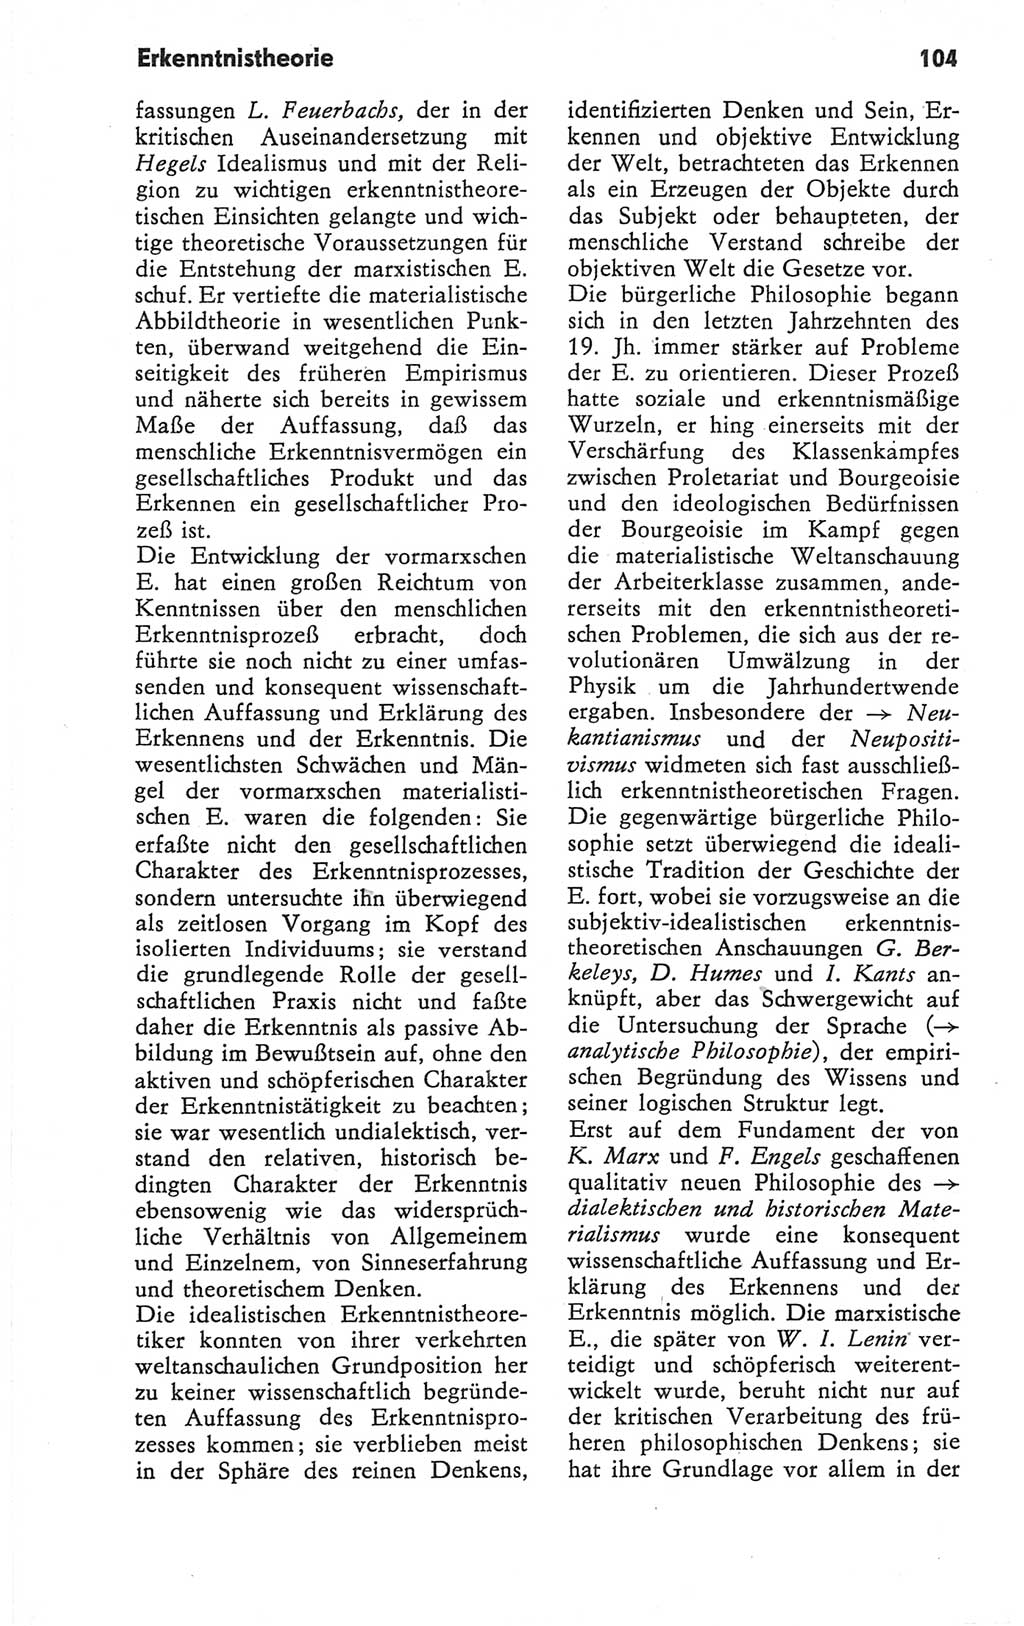 Kleines Wörterbuch der marxistisch-leninistischen Philosophie [Deutsche Demokratische Republik (DDR)] 1979, Seite 104 (Kl. Wb. ML Phil. DDR 1979, S. 104)